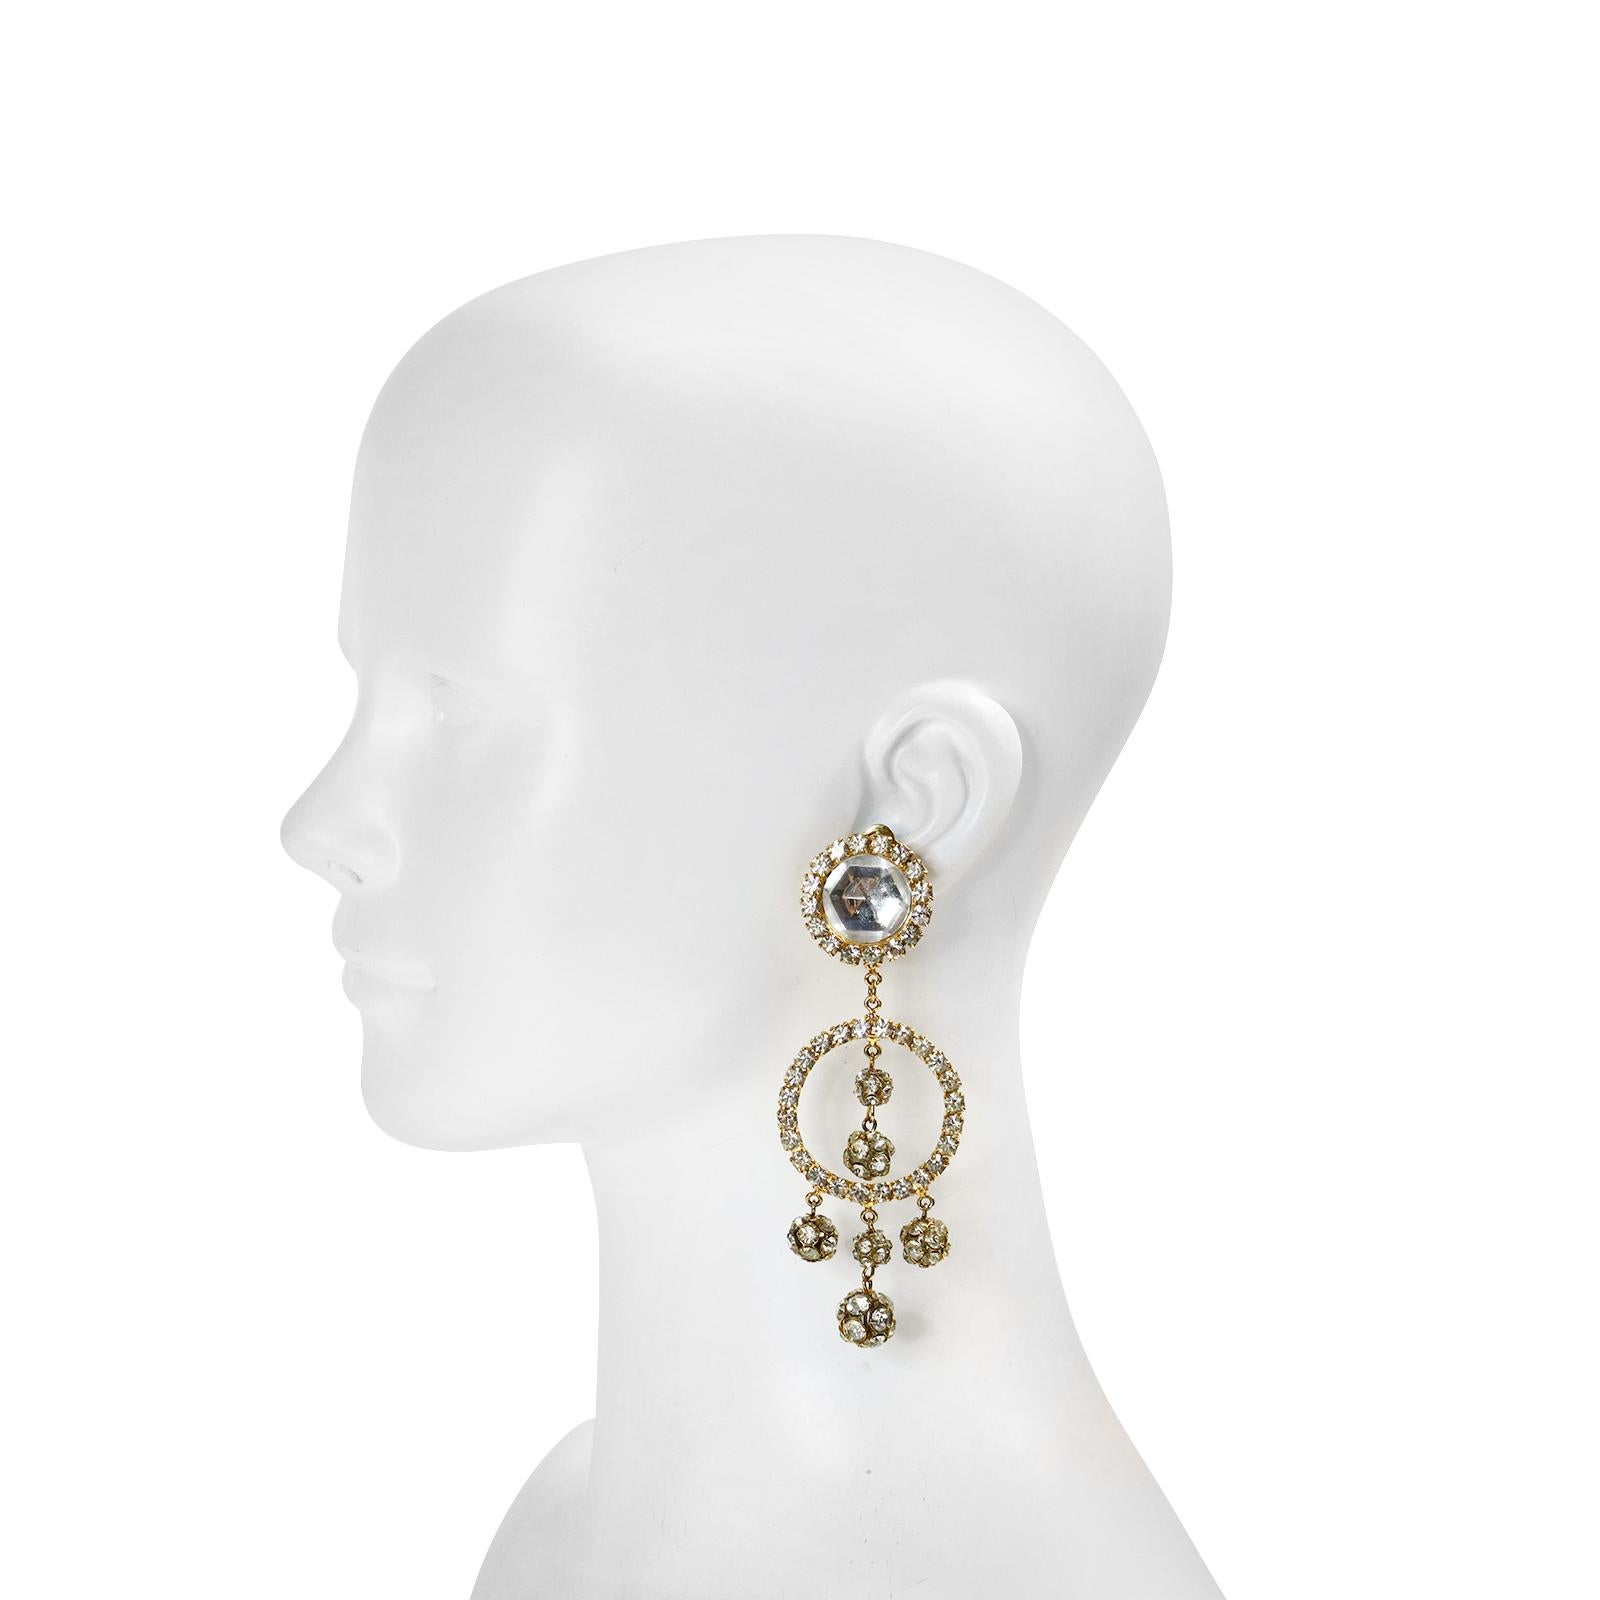 1960s earrings